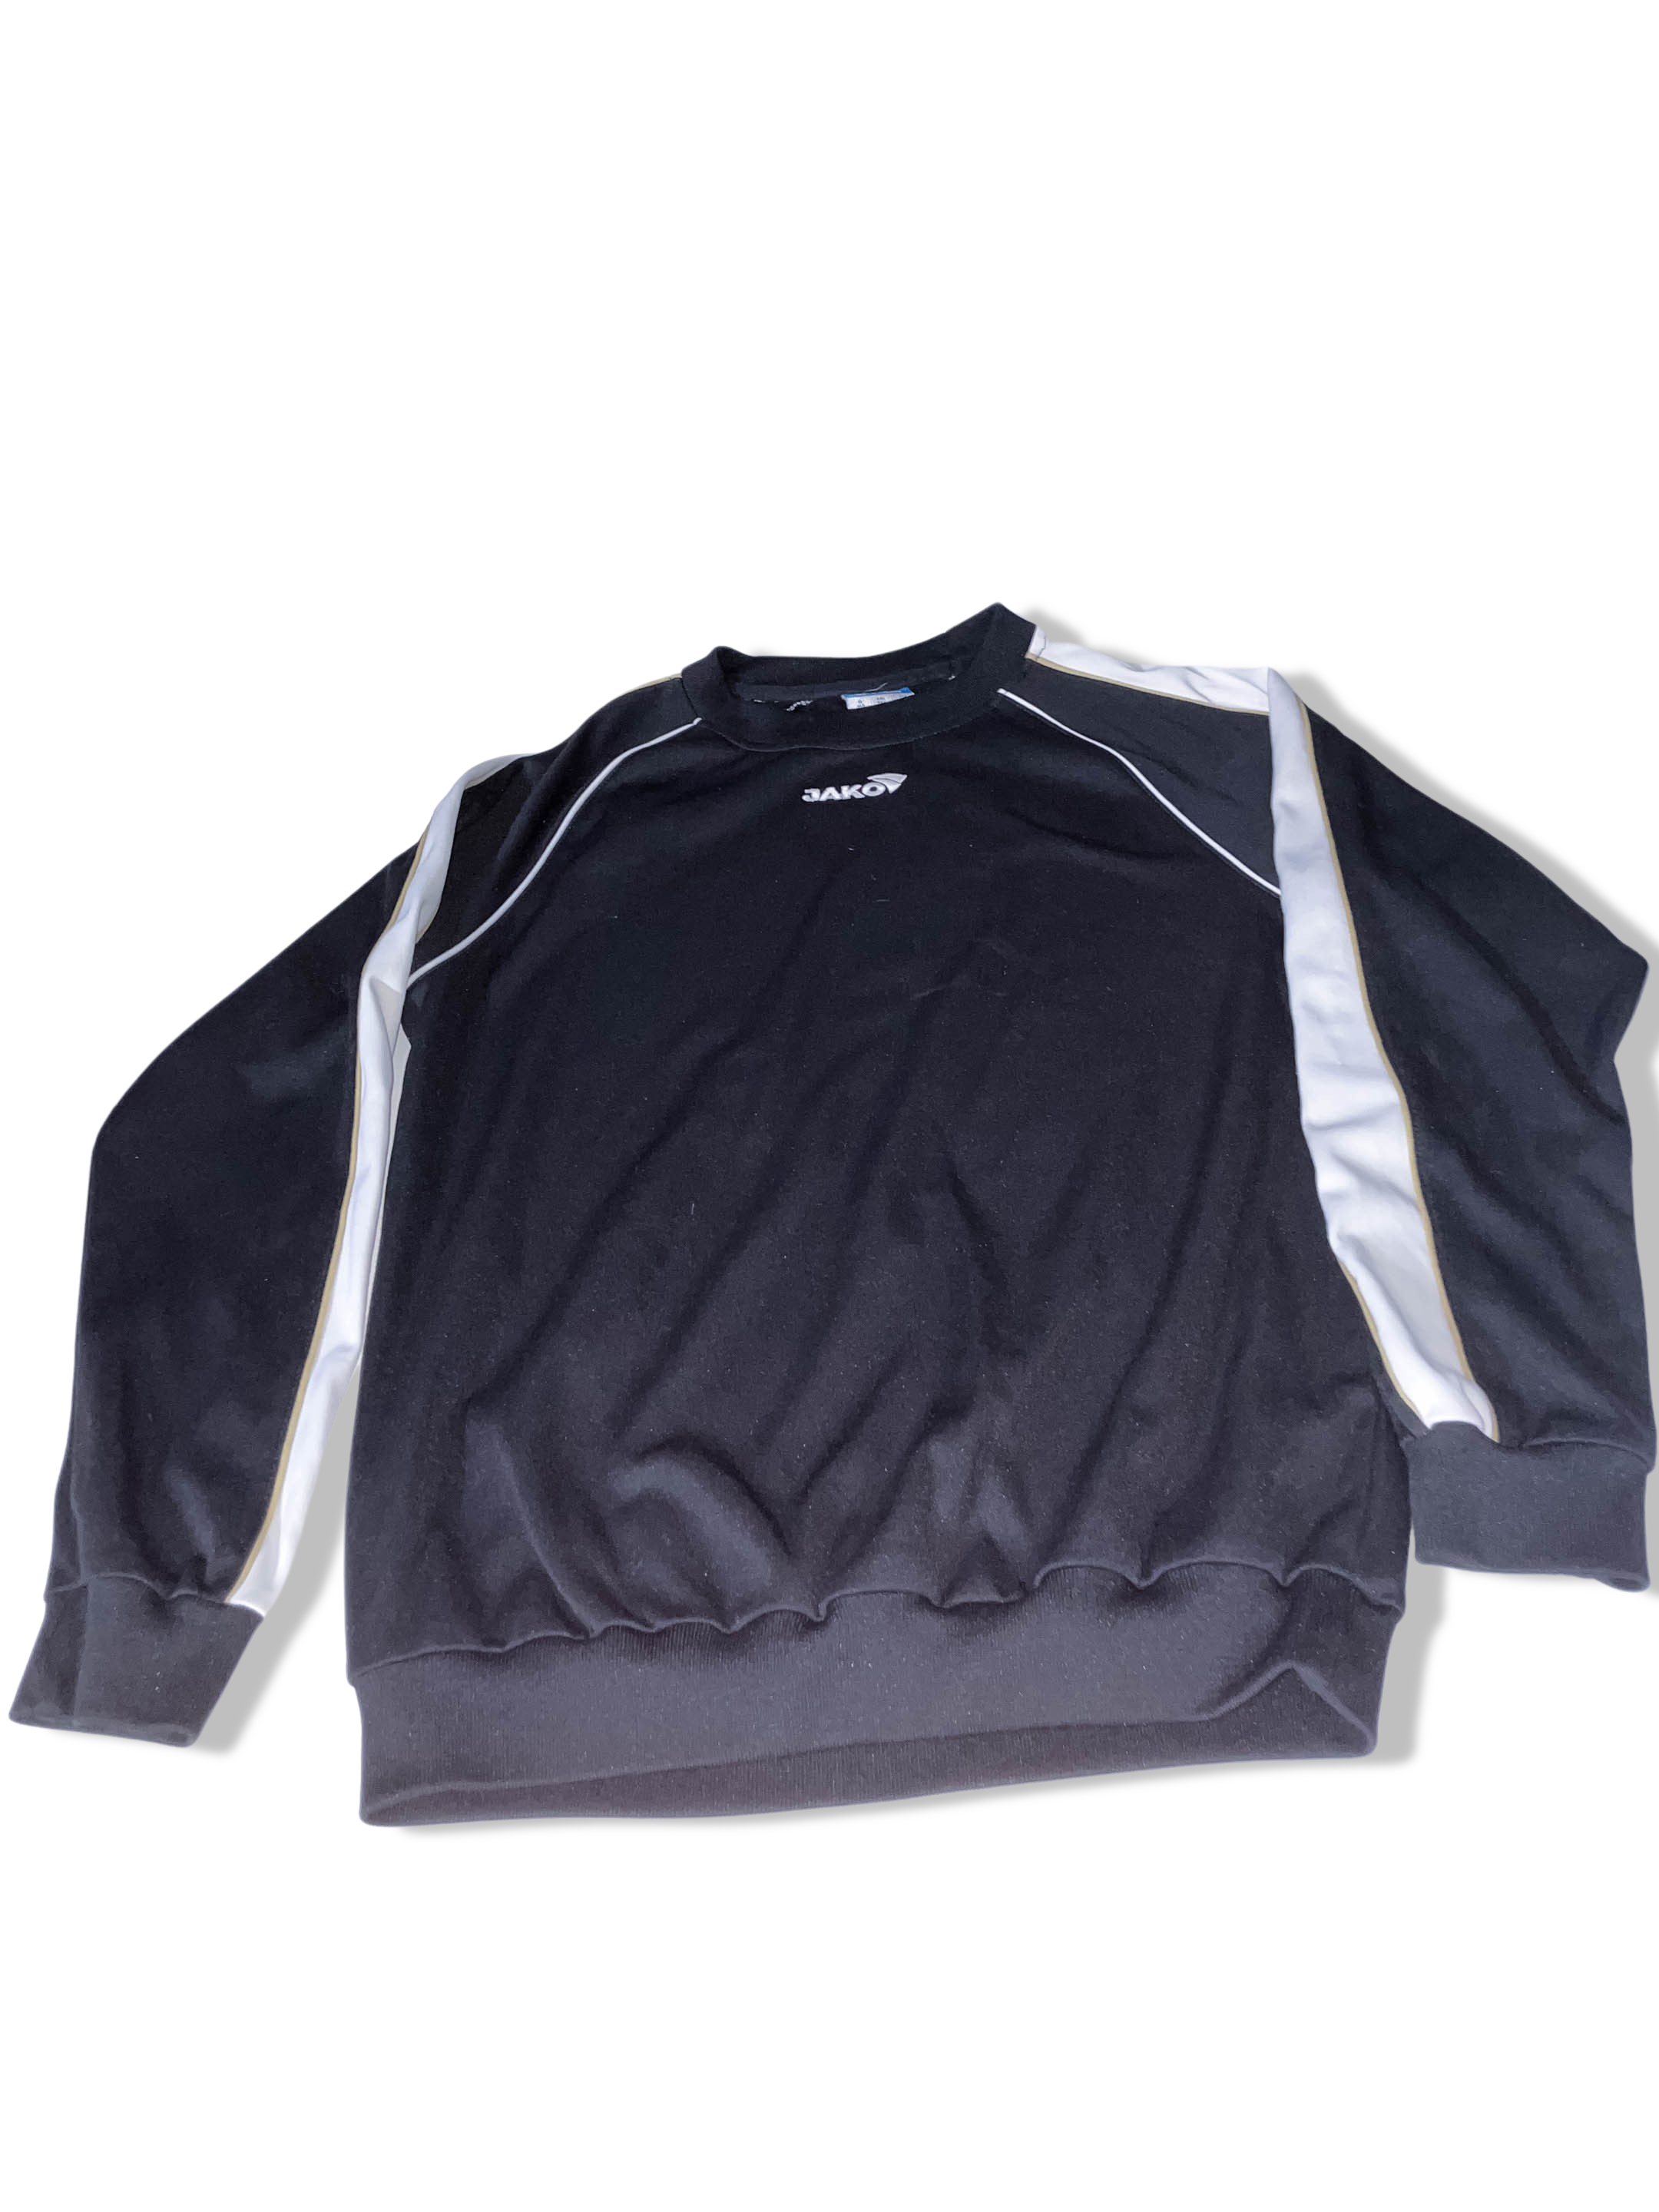 Vintage Jako black small long sleeve sweatshirt